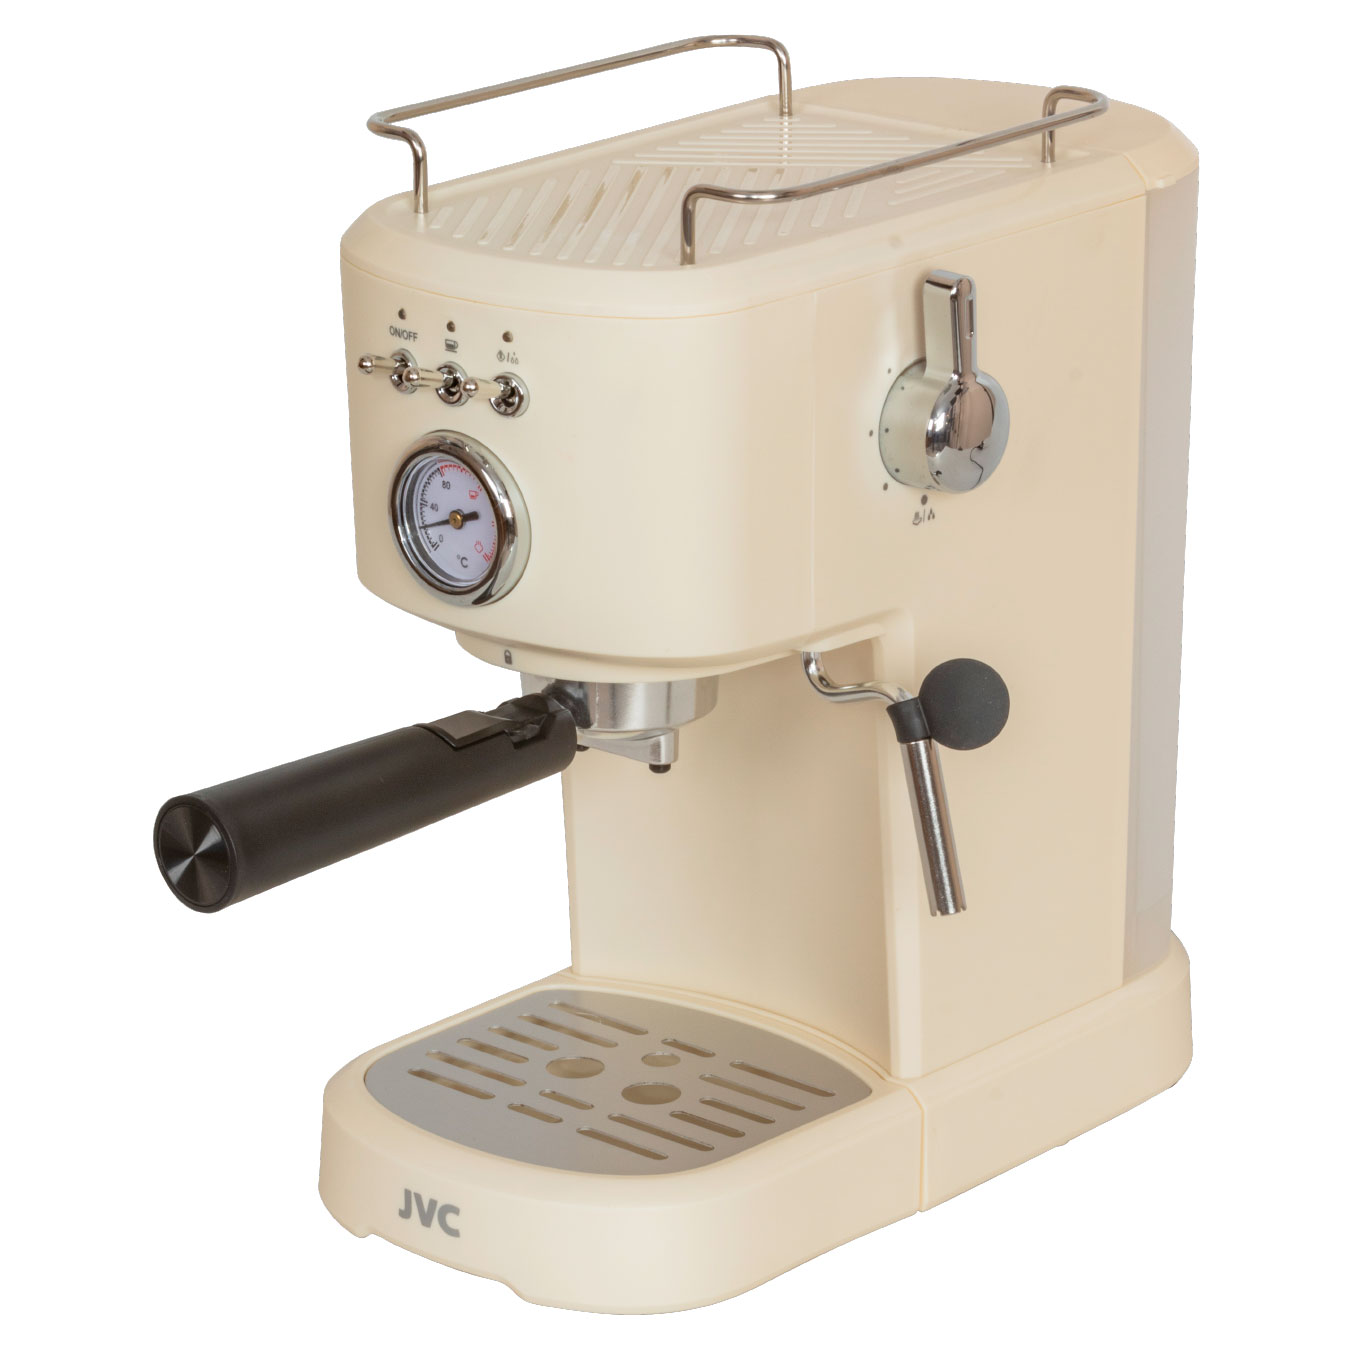 Рожковая кофеварка JVC JK-CF32 бежевая рожковая кофеварка kitchenaid 5kes6503 gray